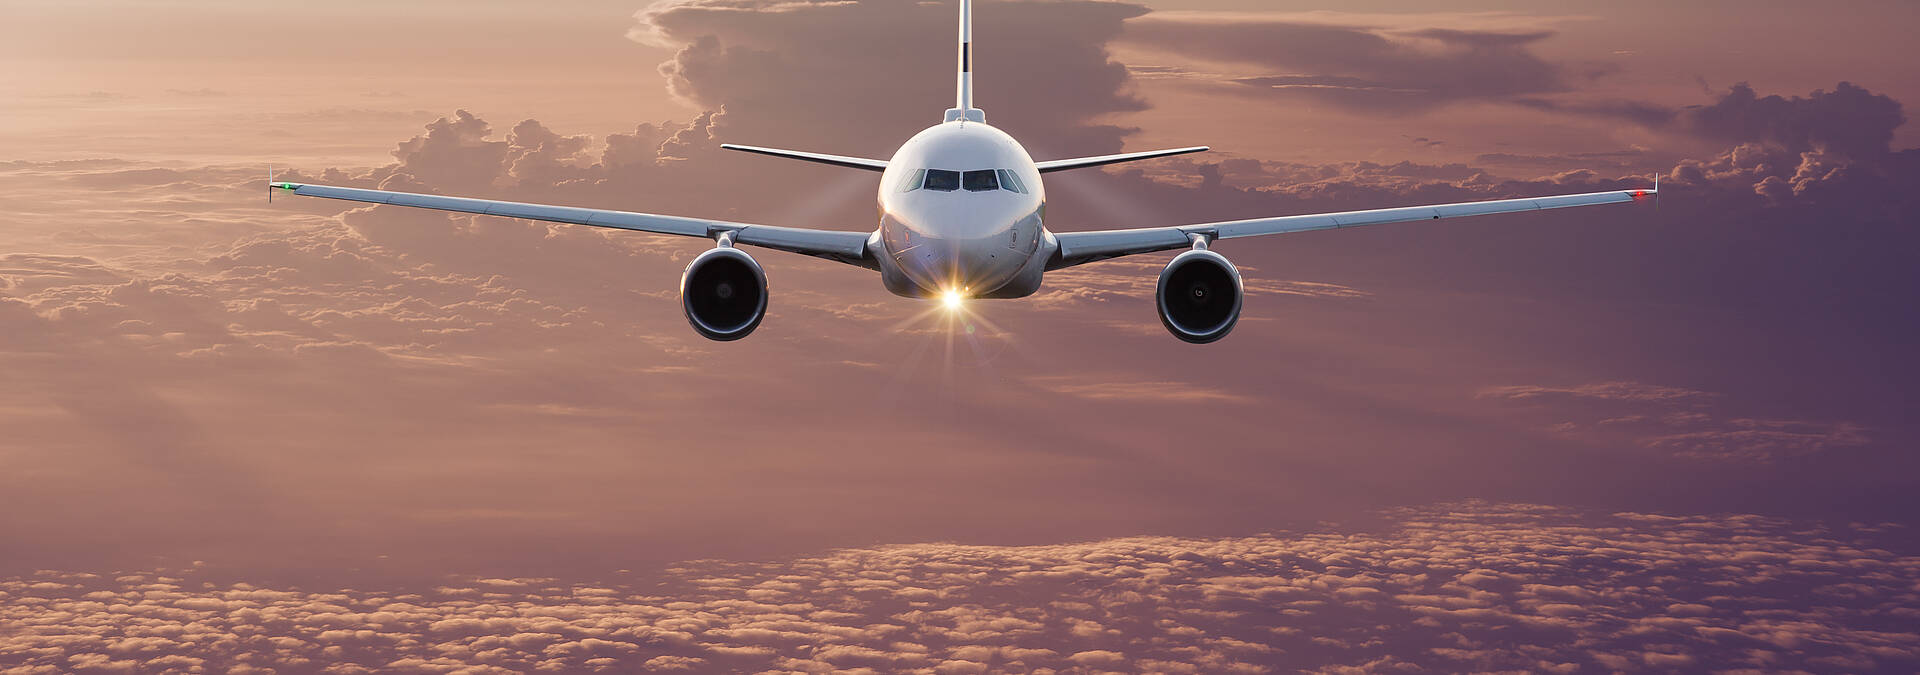 Anreise mit dem Flugzeug BRM © Adobe Stock - Lukas Gojda